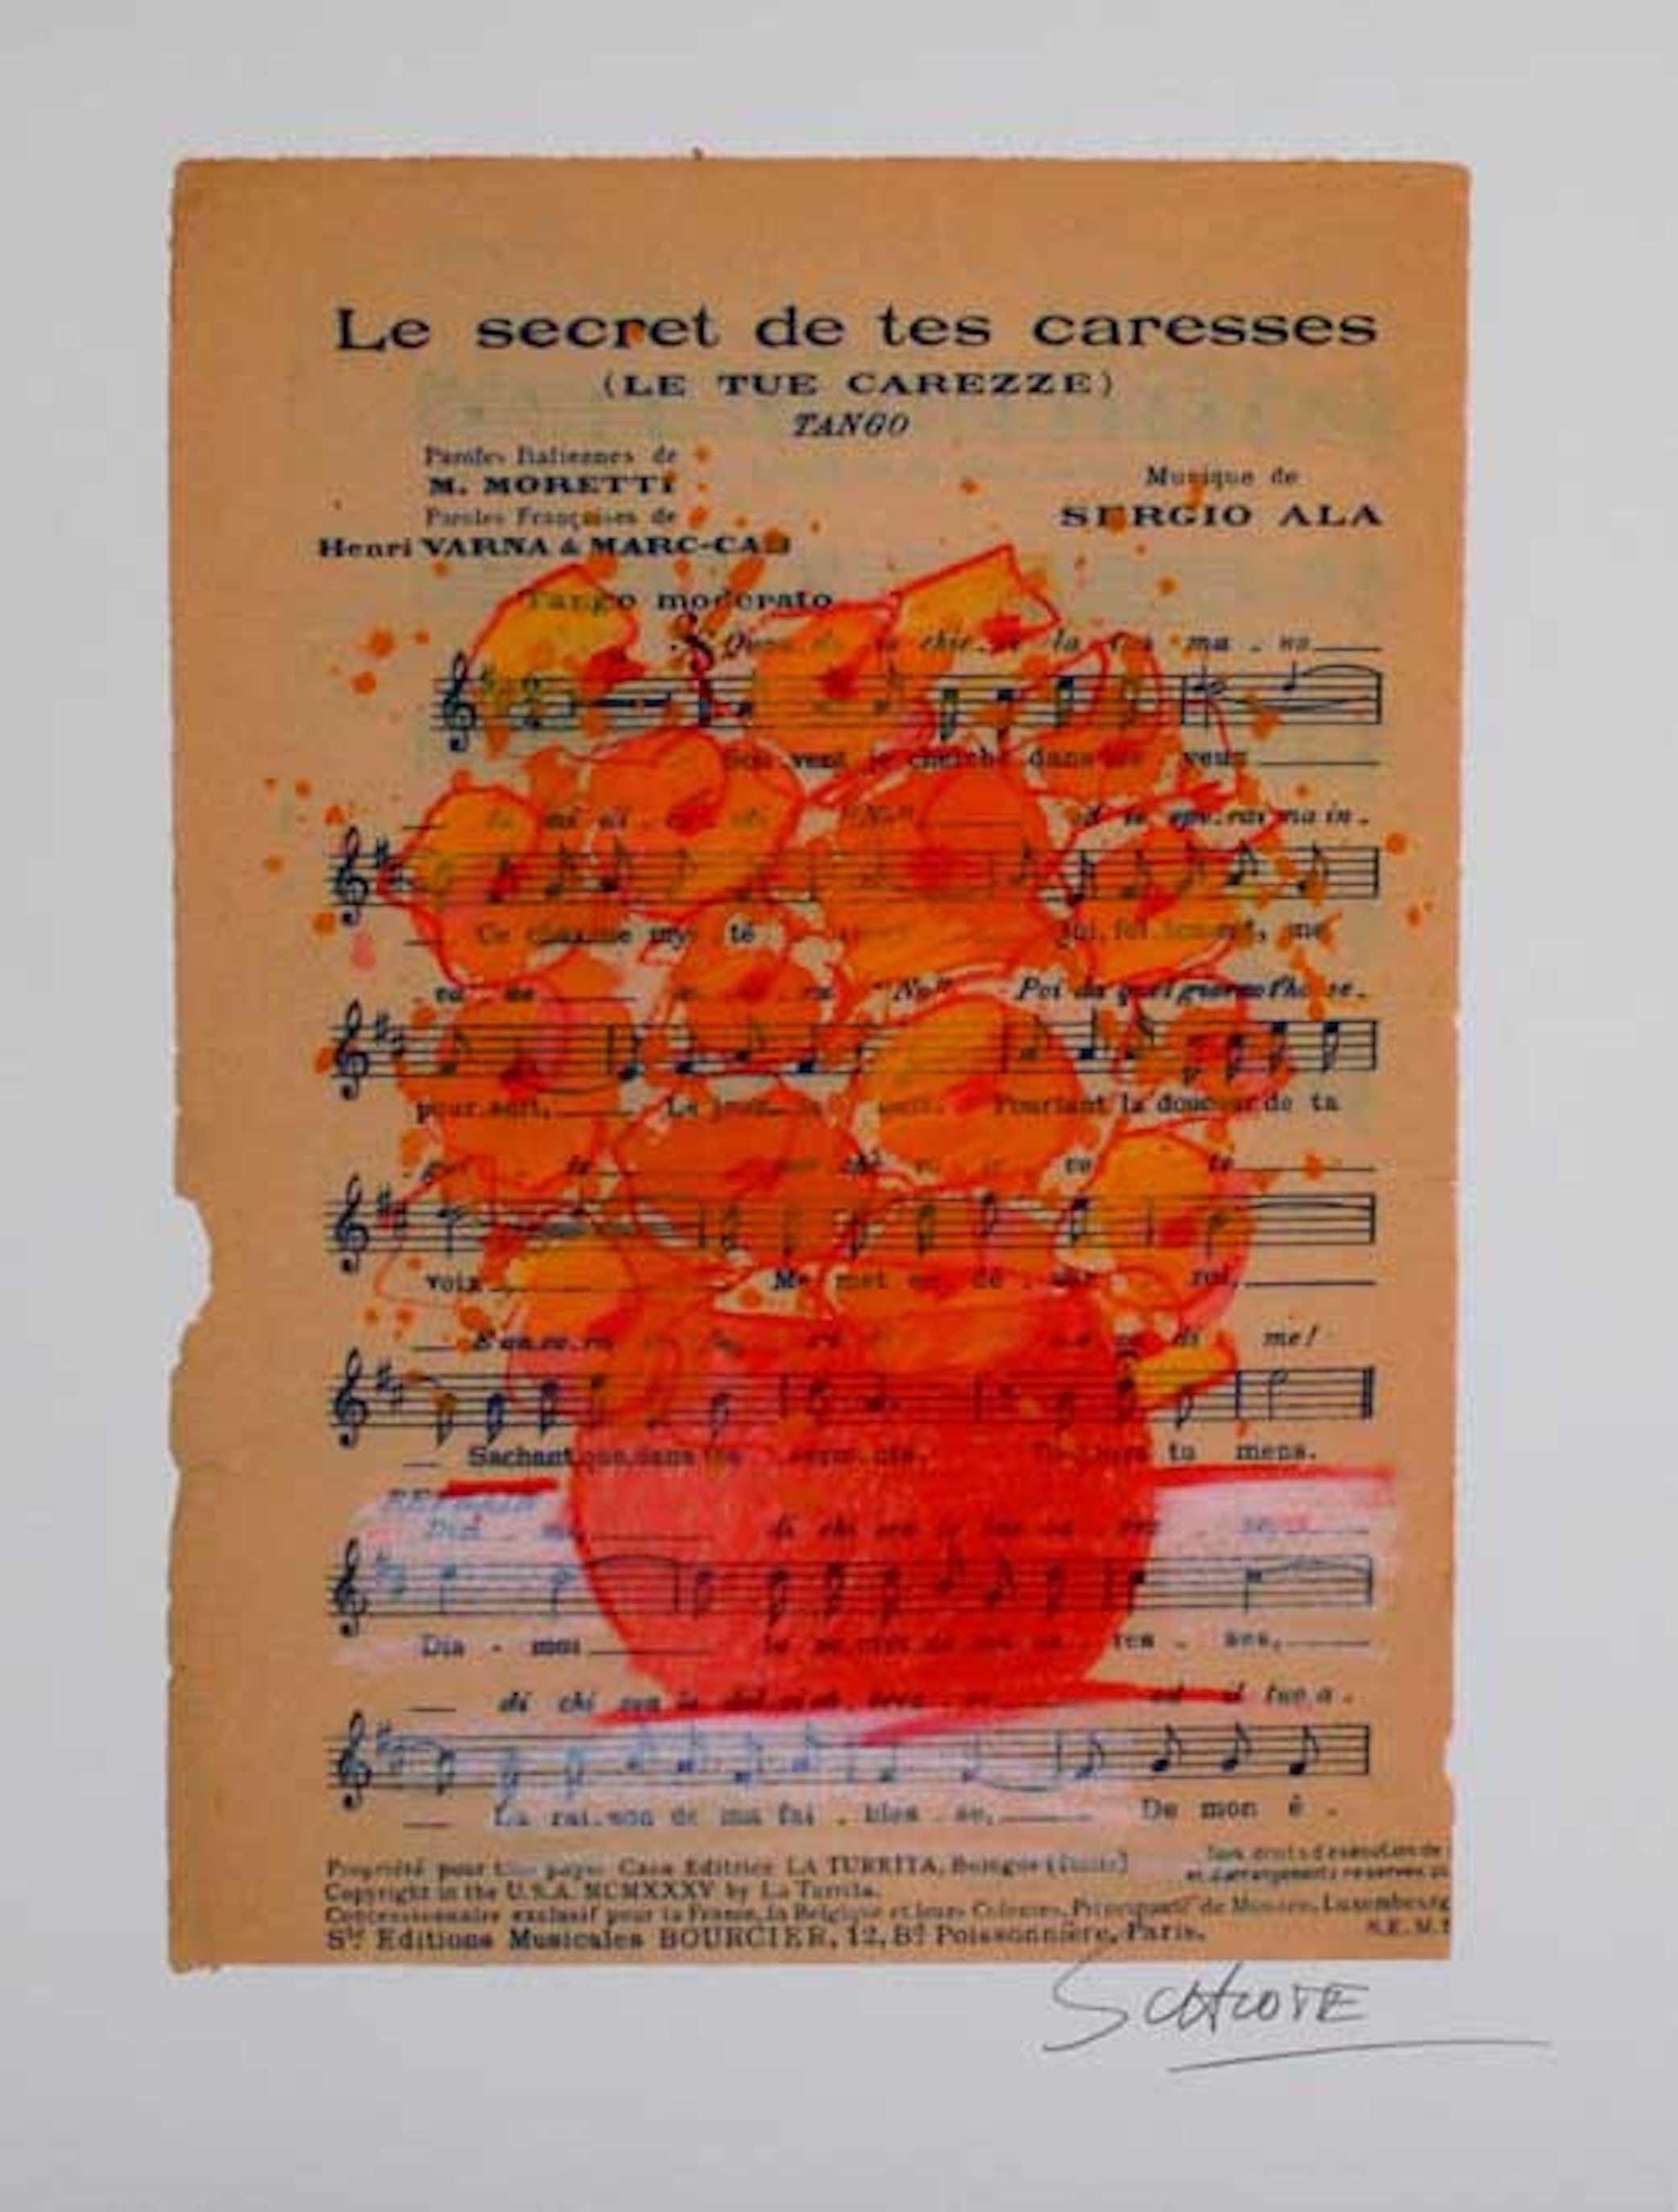 Le secret de tes caresses - Print by Wilhelm Schlote